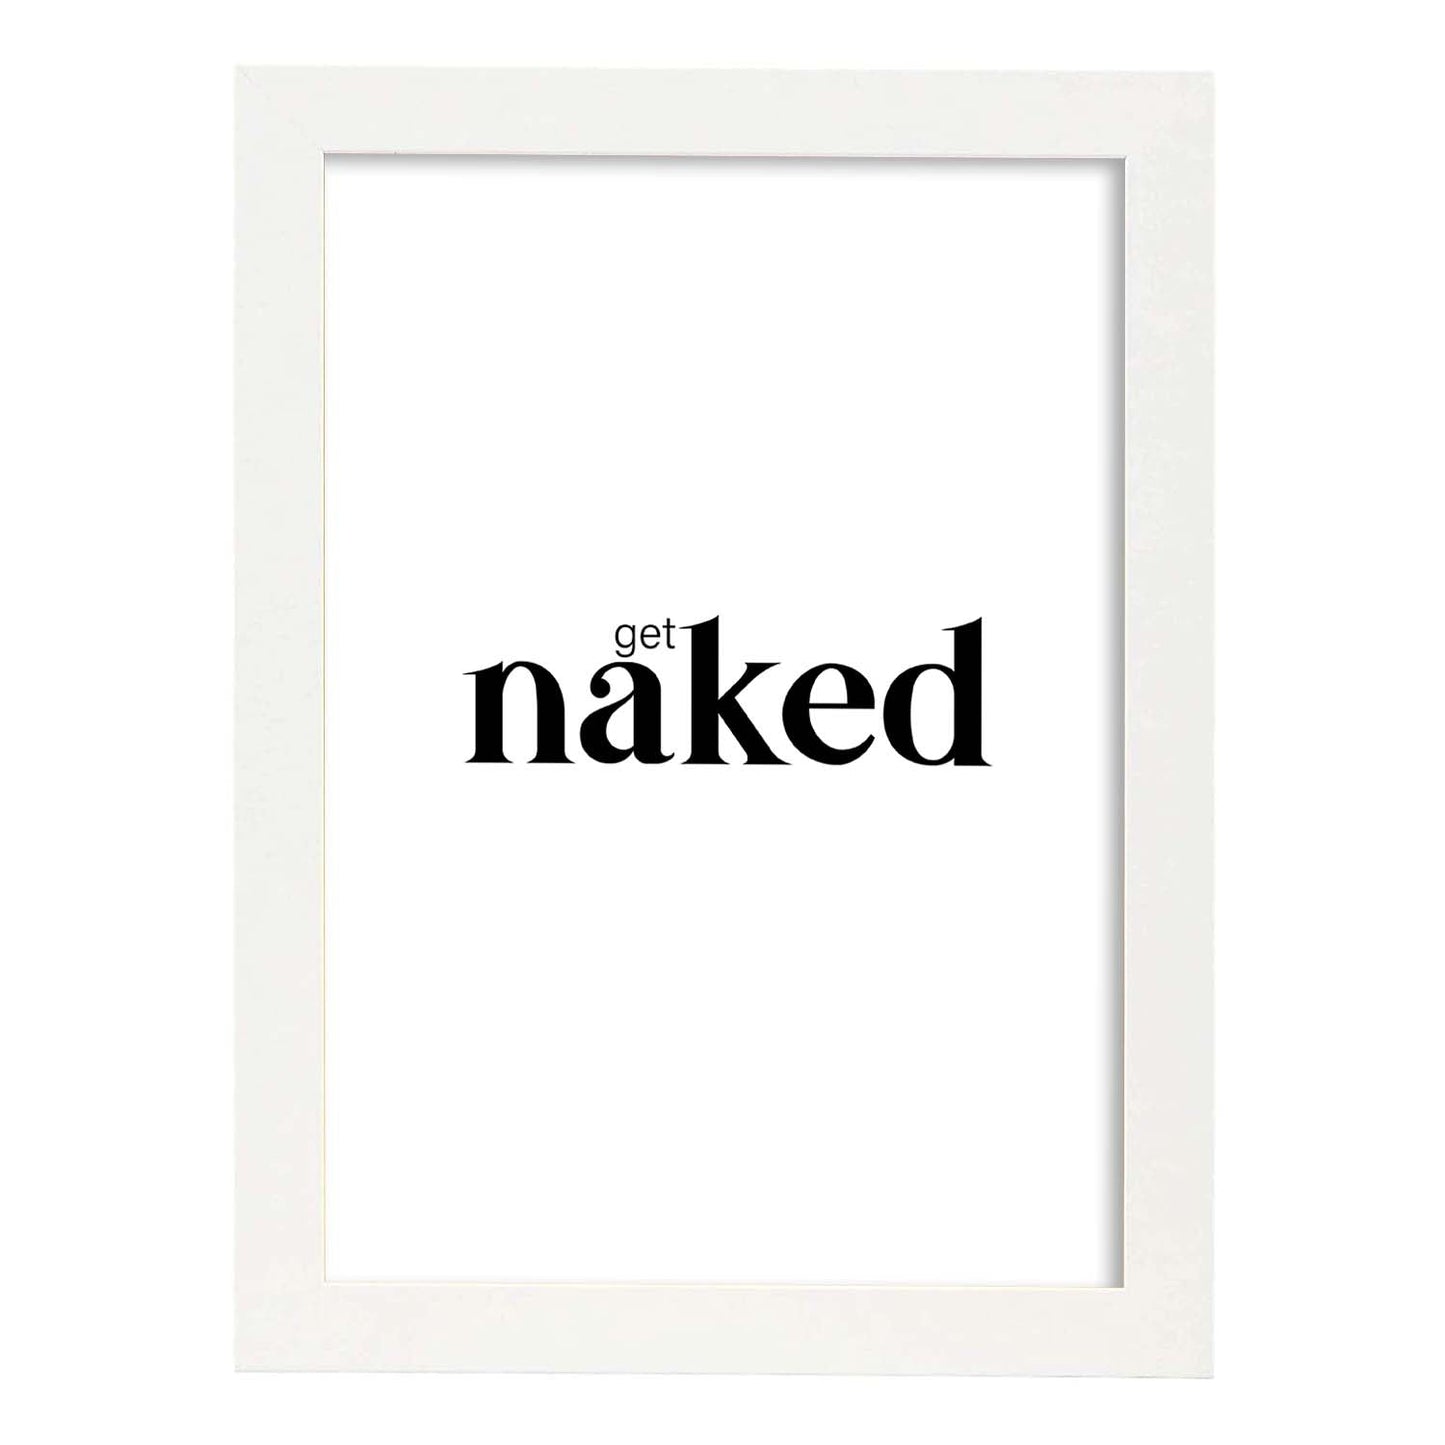 Lamina artistica decorativa con ilustración de get naked estilo Mensaje inspiracional-Artwork-Nacnic-A4-Marco Blanco-Nacnic Estudio SL